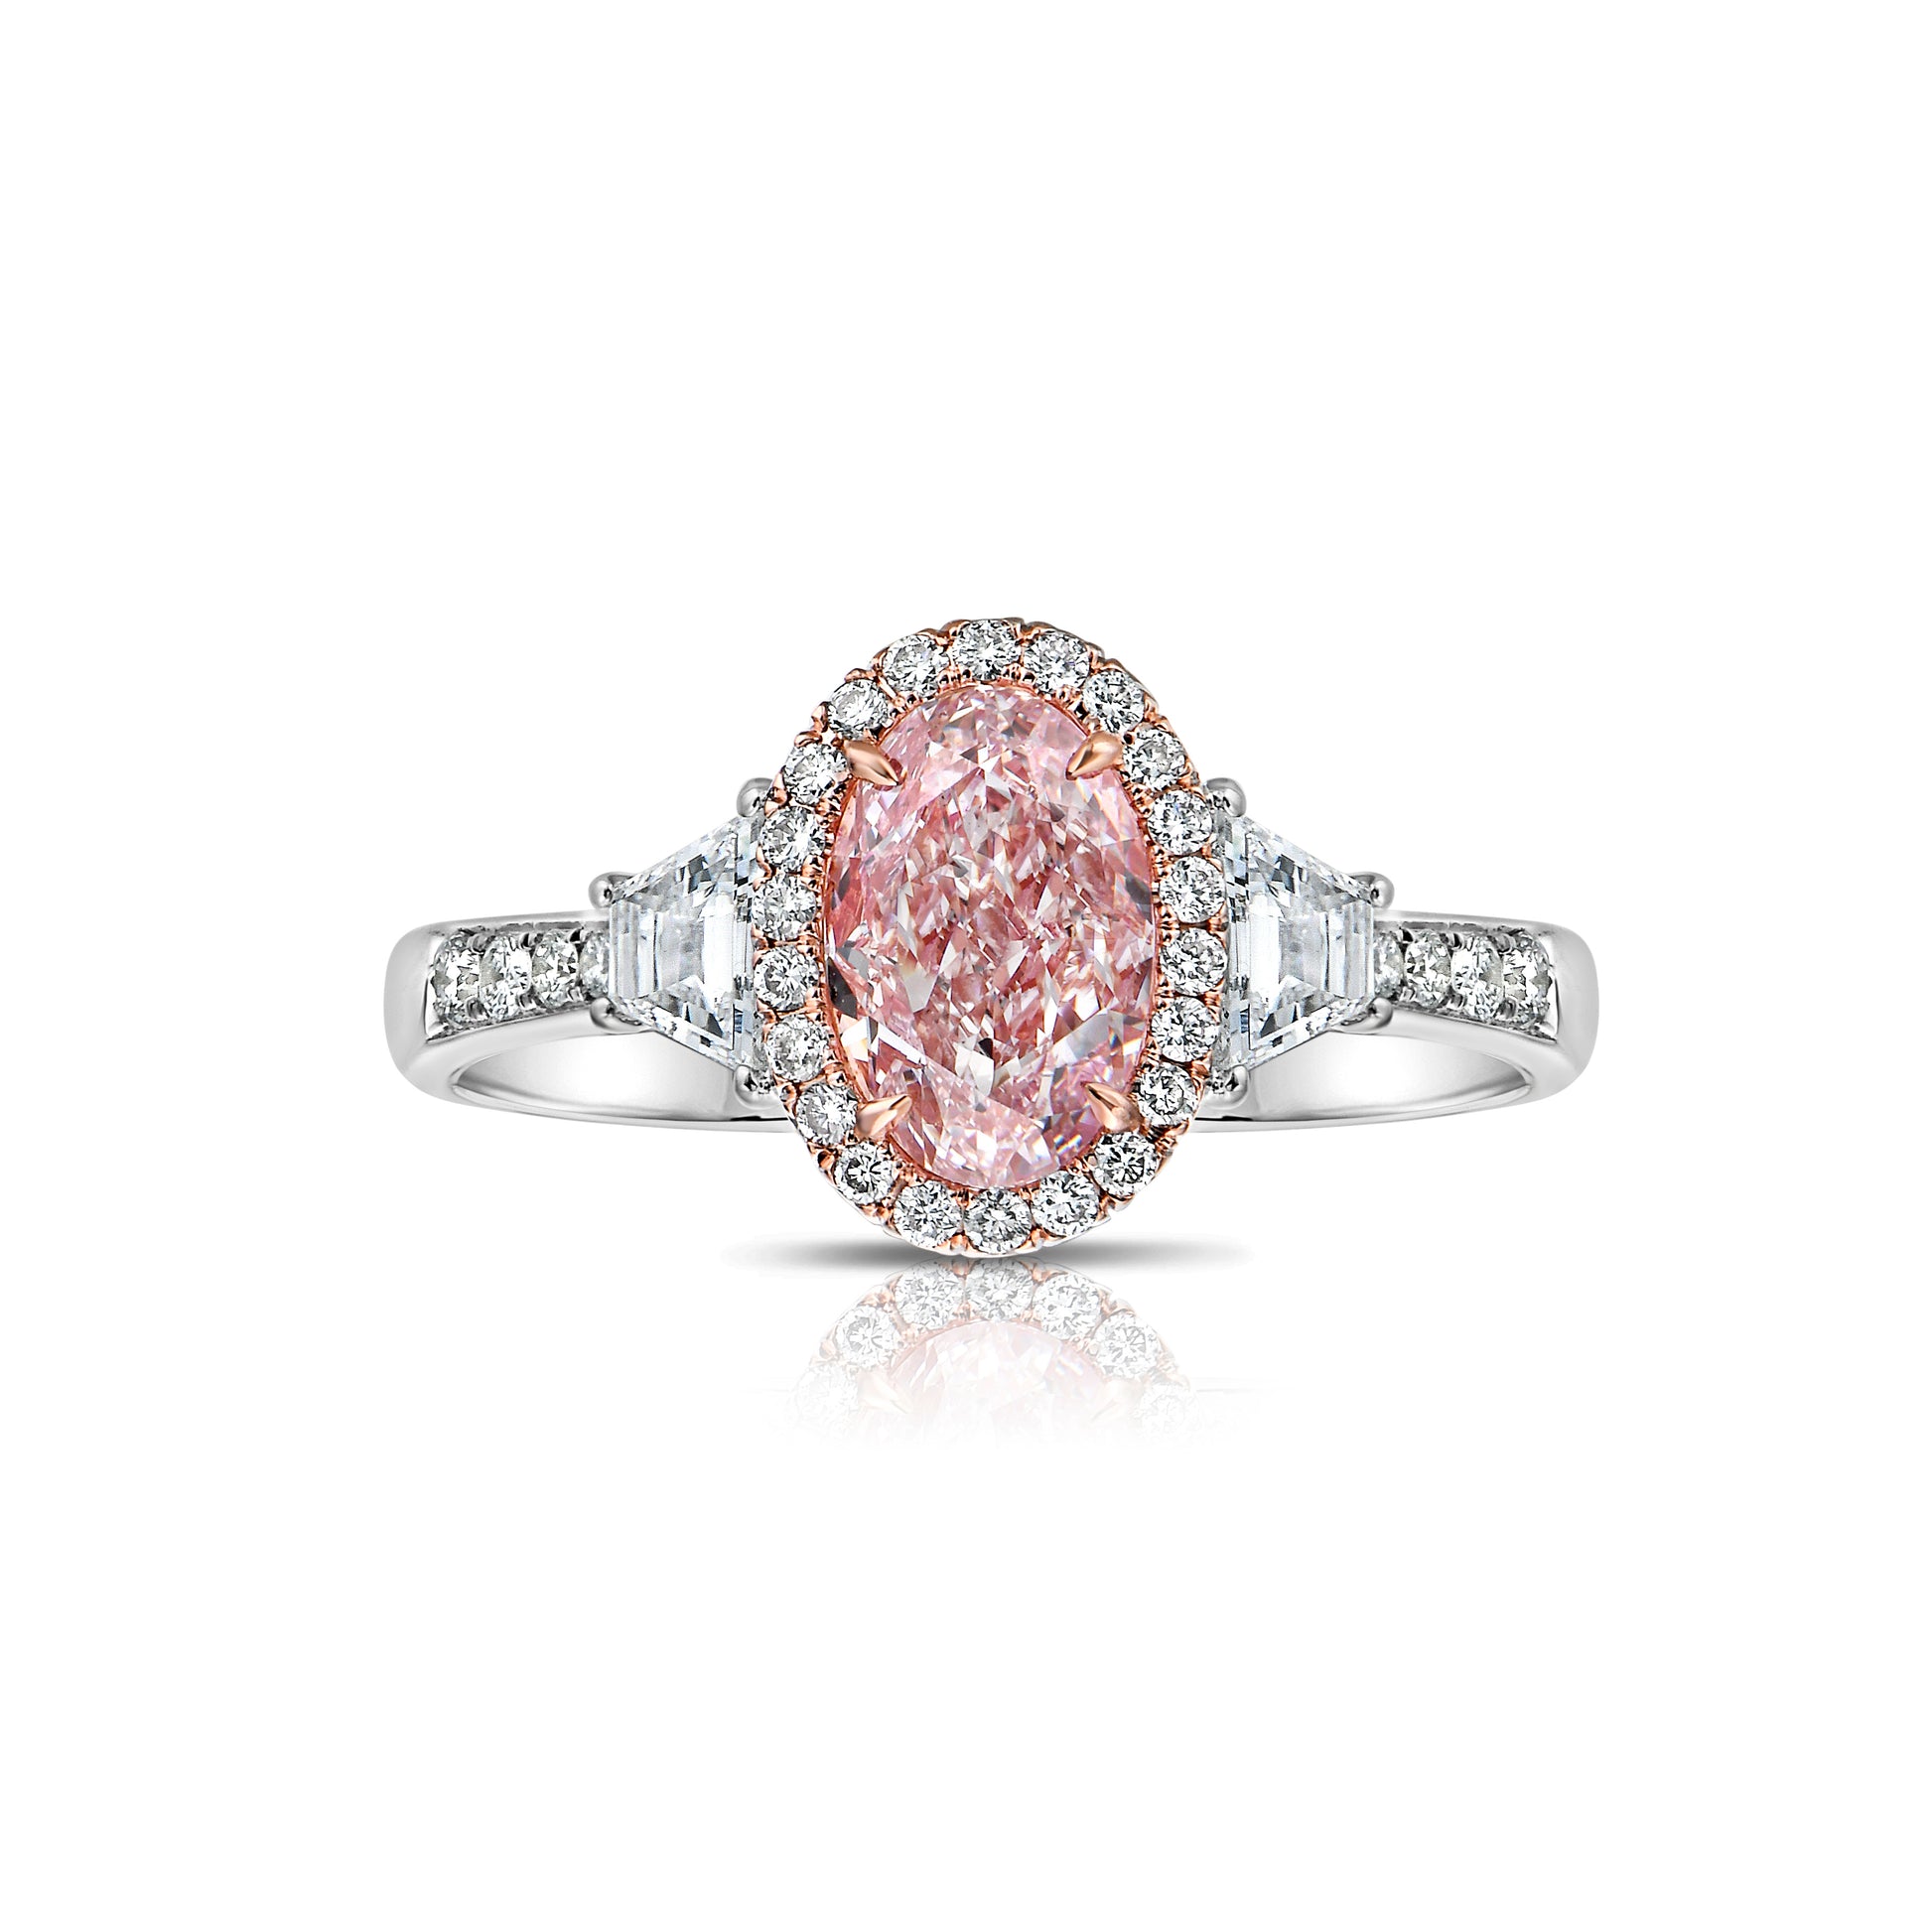 Pink diamond ring. pink diamond engagement ring. light pink diamonds. light pink oval diamond. Unique engagement ring.